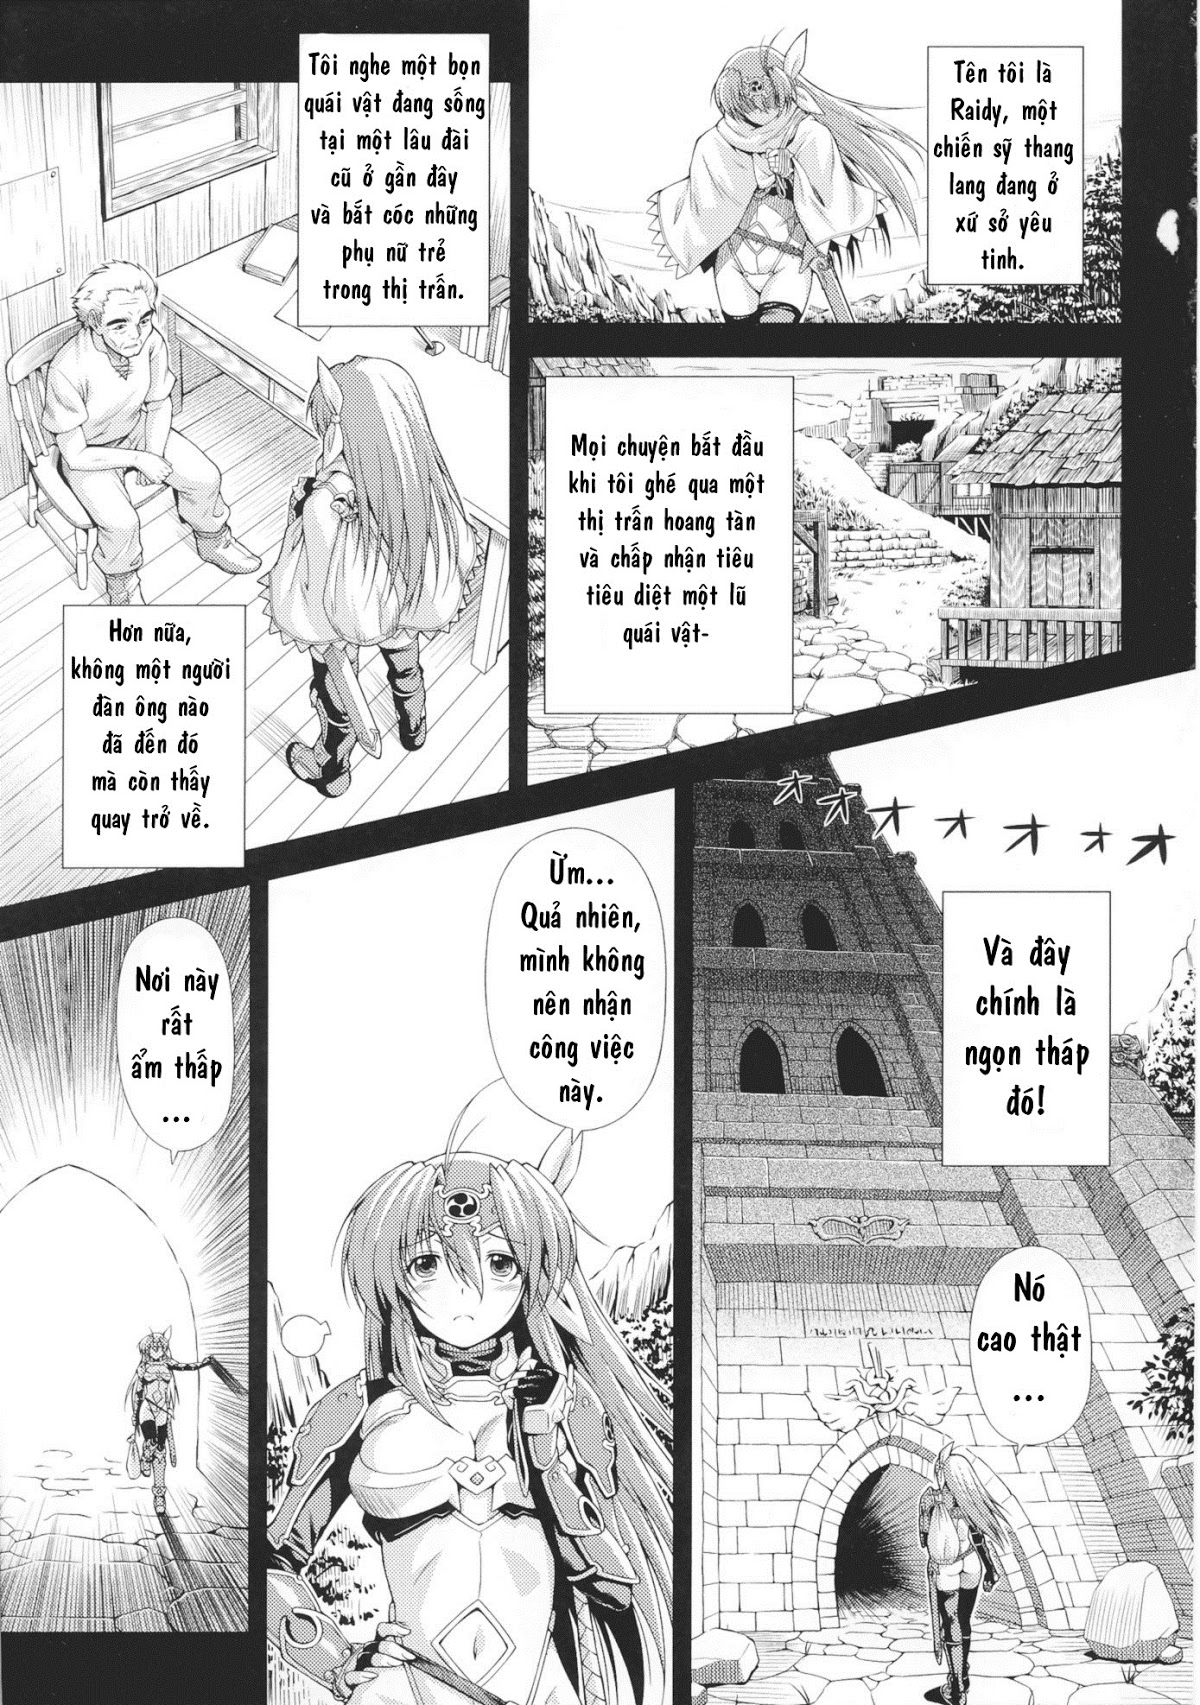 Ikazuchi no Senshi Raidy ~Haja no Raikou Chương 1 Trang 7